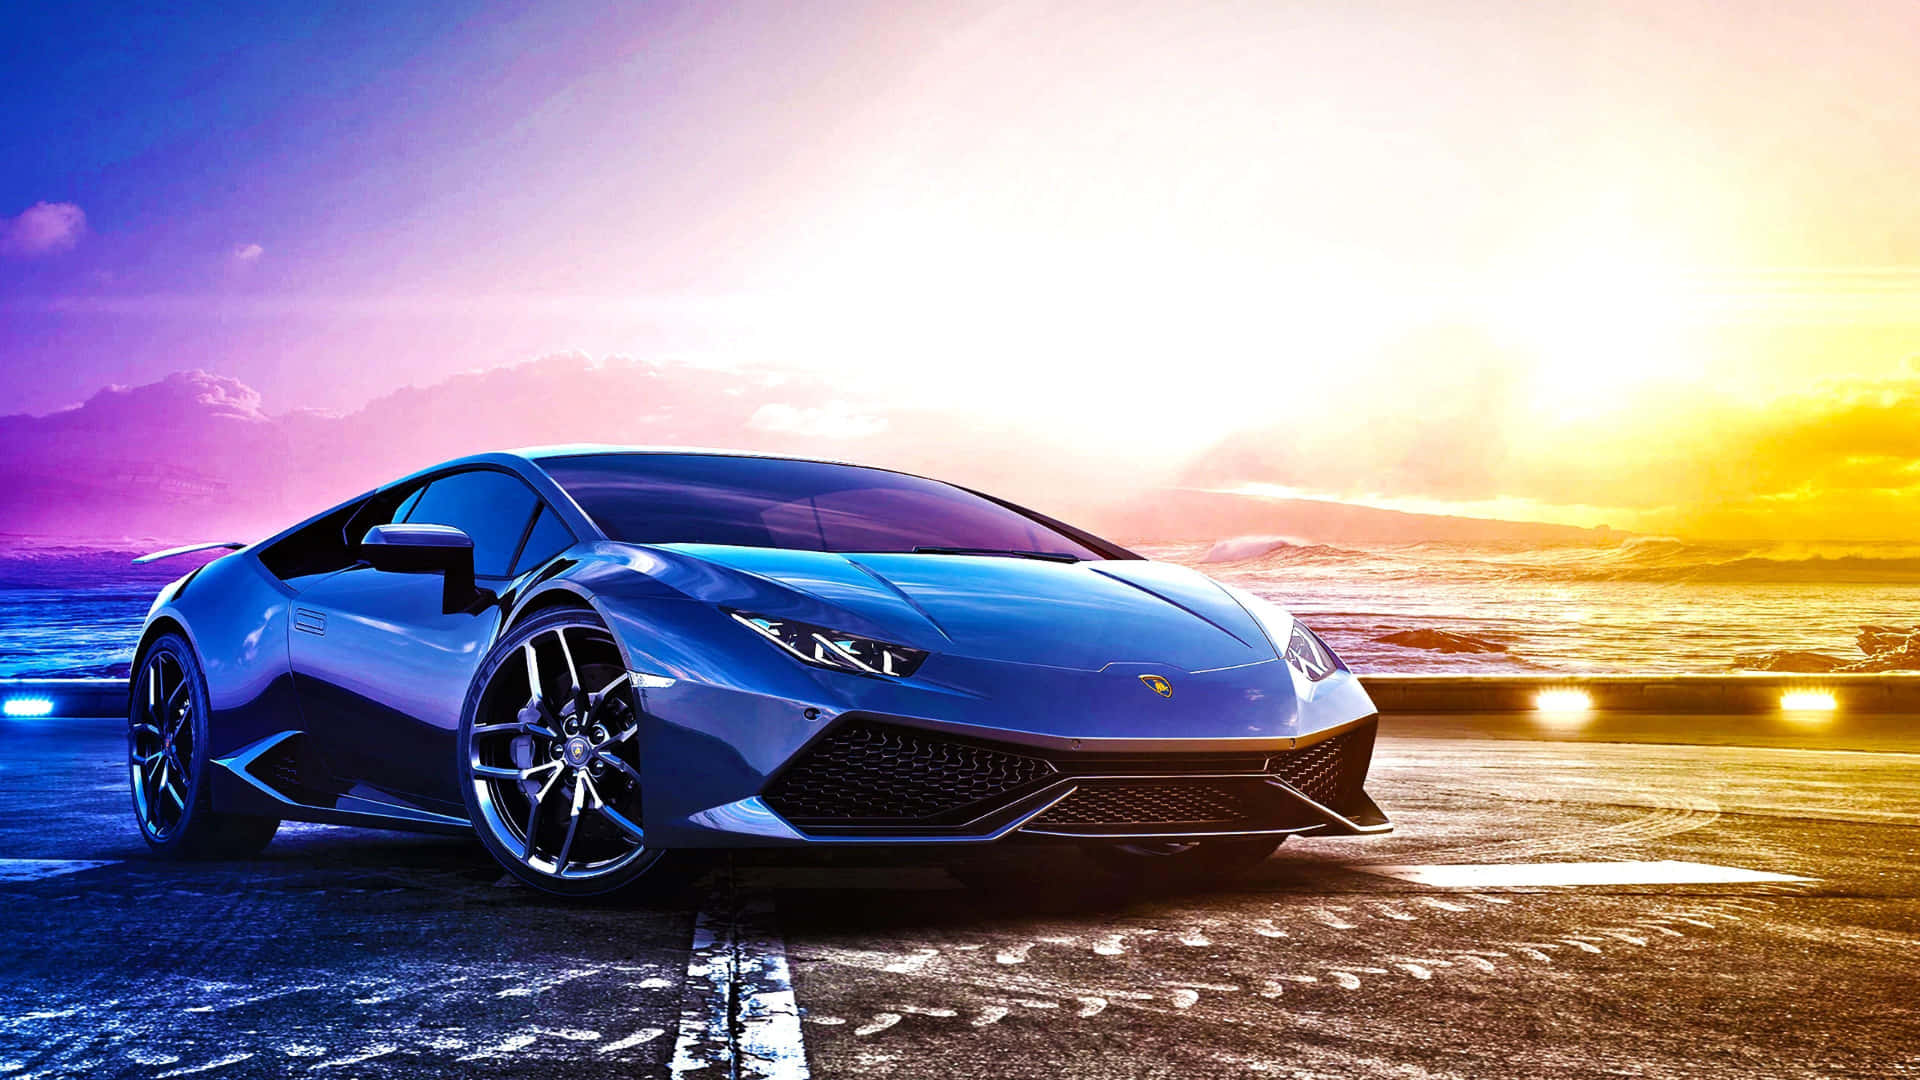 Erlebensie Geschwindigkeit Und Luxus Mit Einem Lamborghini.